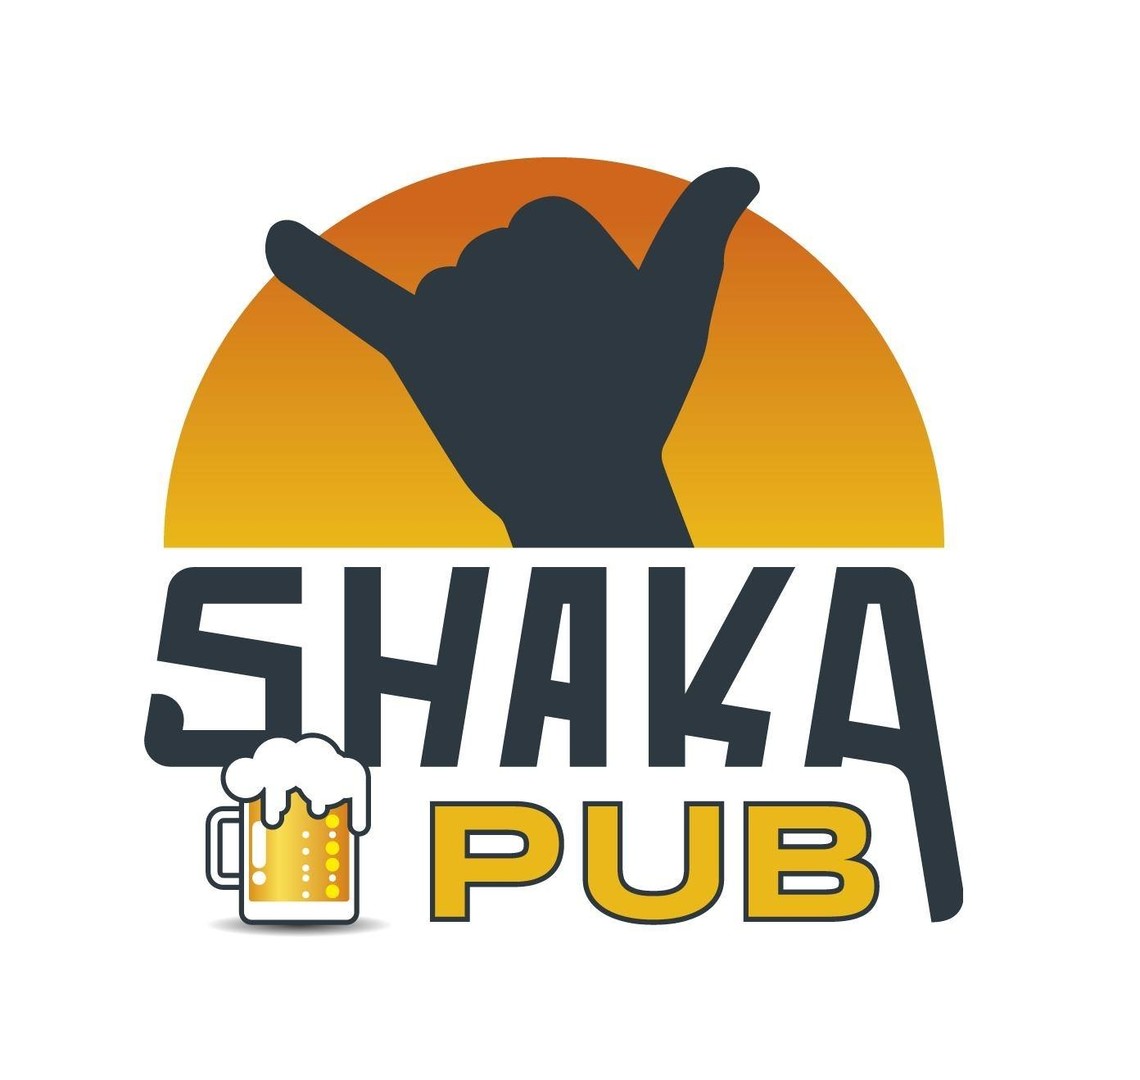 Soirée lounge au Shaka Pub